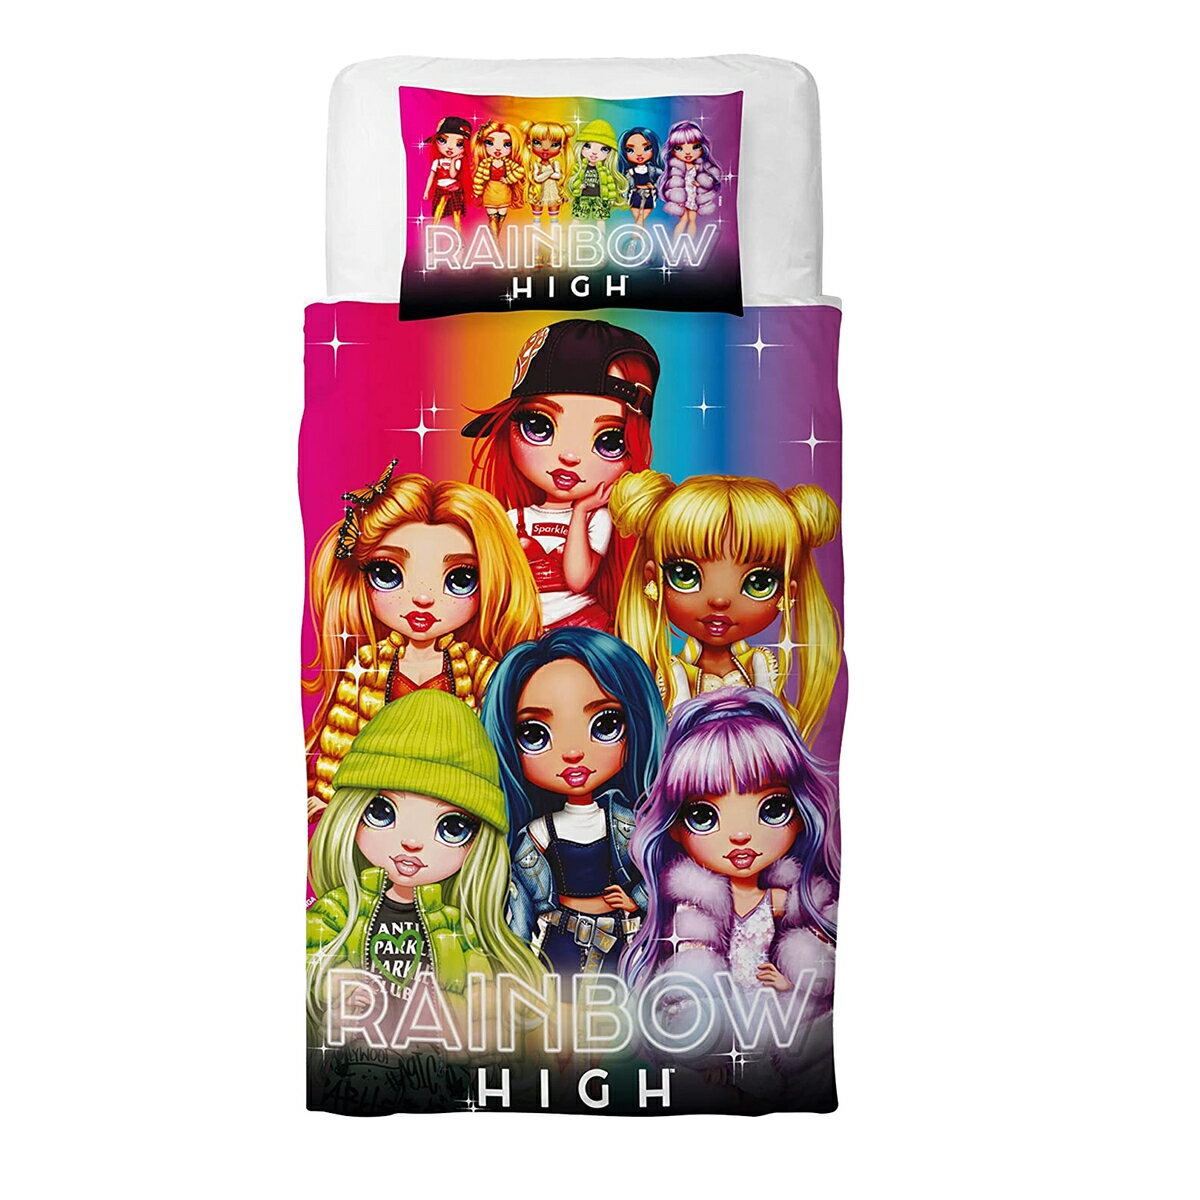 (レインボー・ハイ) Rainbow High オフィシャル商品 キッズ・子供用 掛け布団カバー・枕カバーセット 女の子 【海外通販】